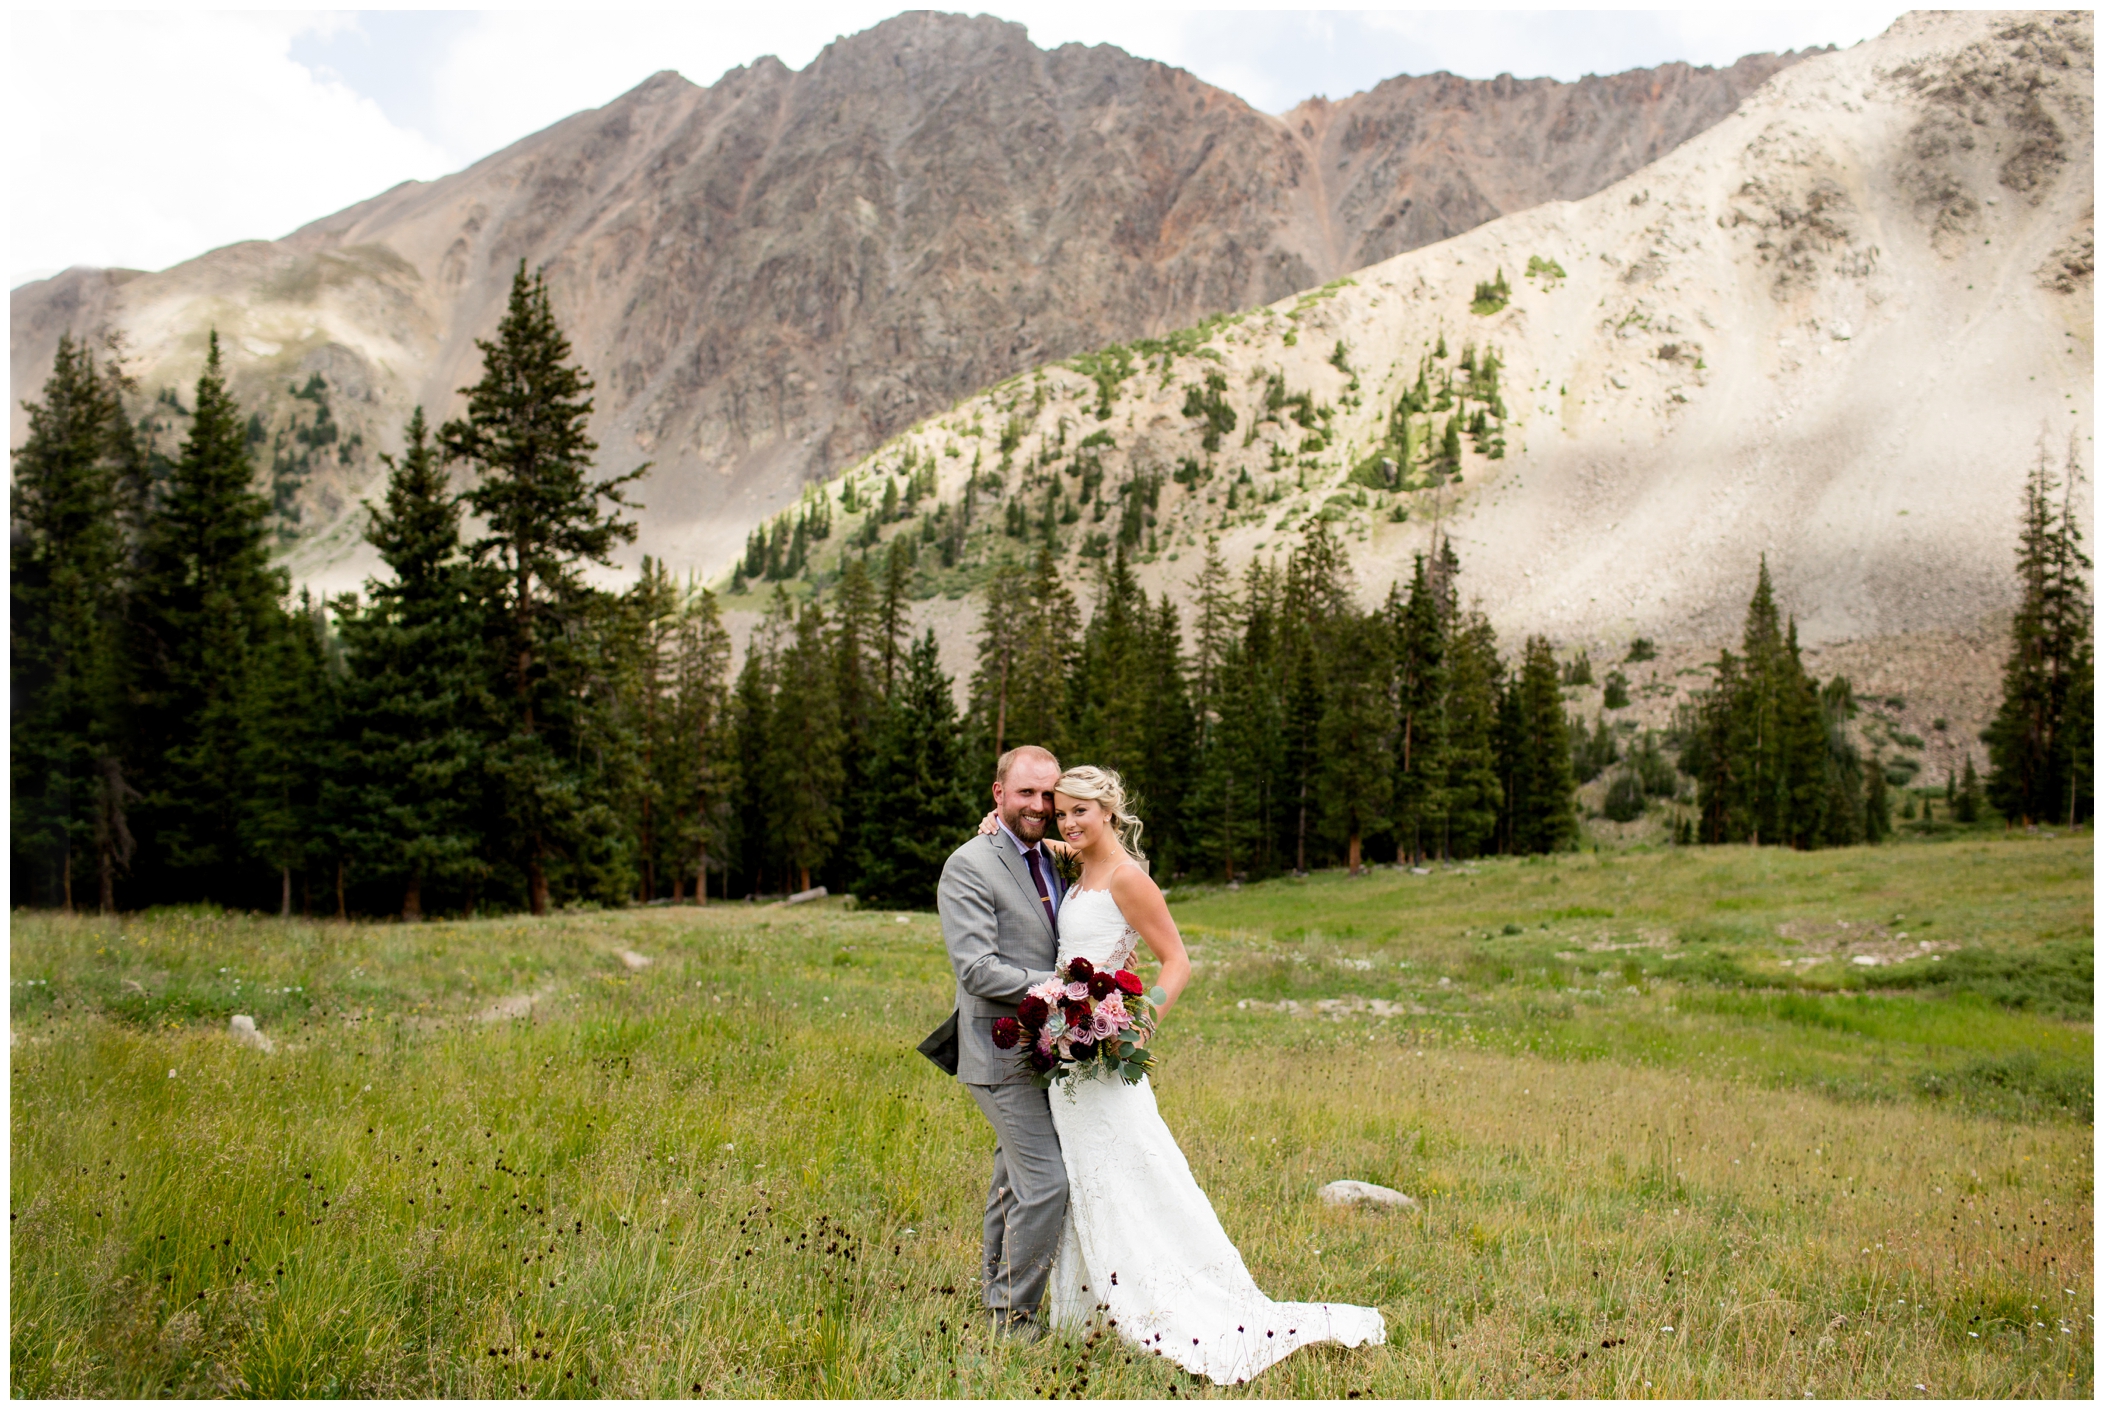 A Basin wedding photos by Colorado mountain wedding photographer Plum Pretty Photography